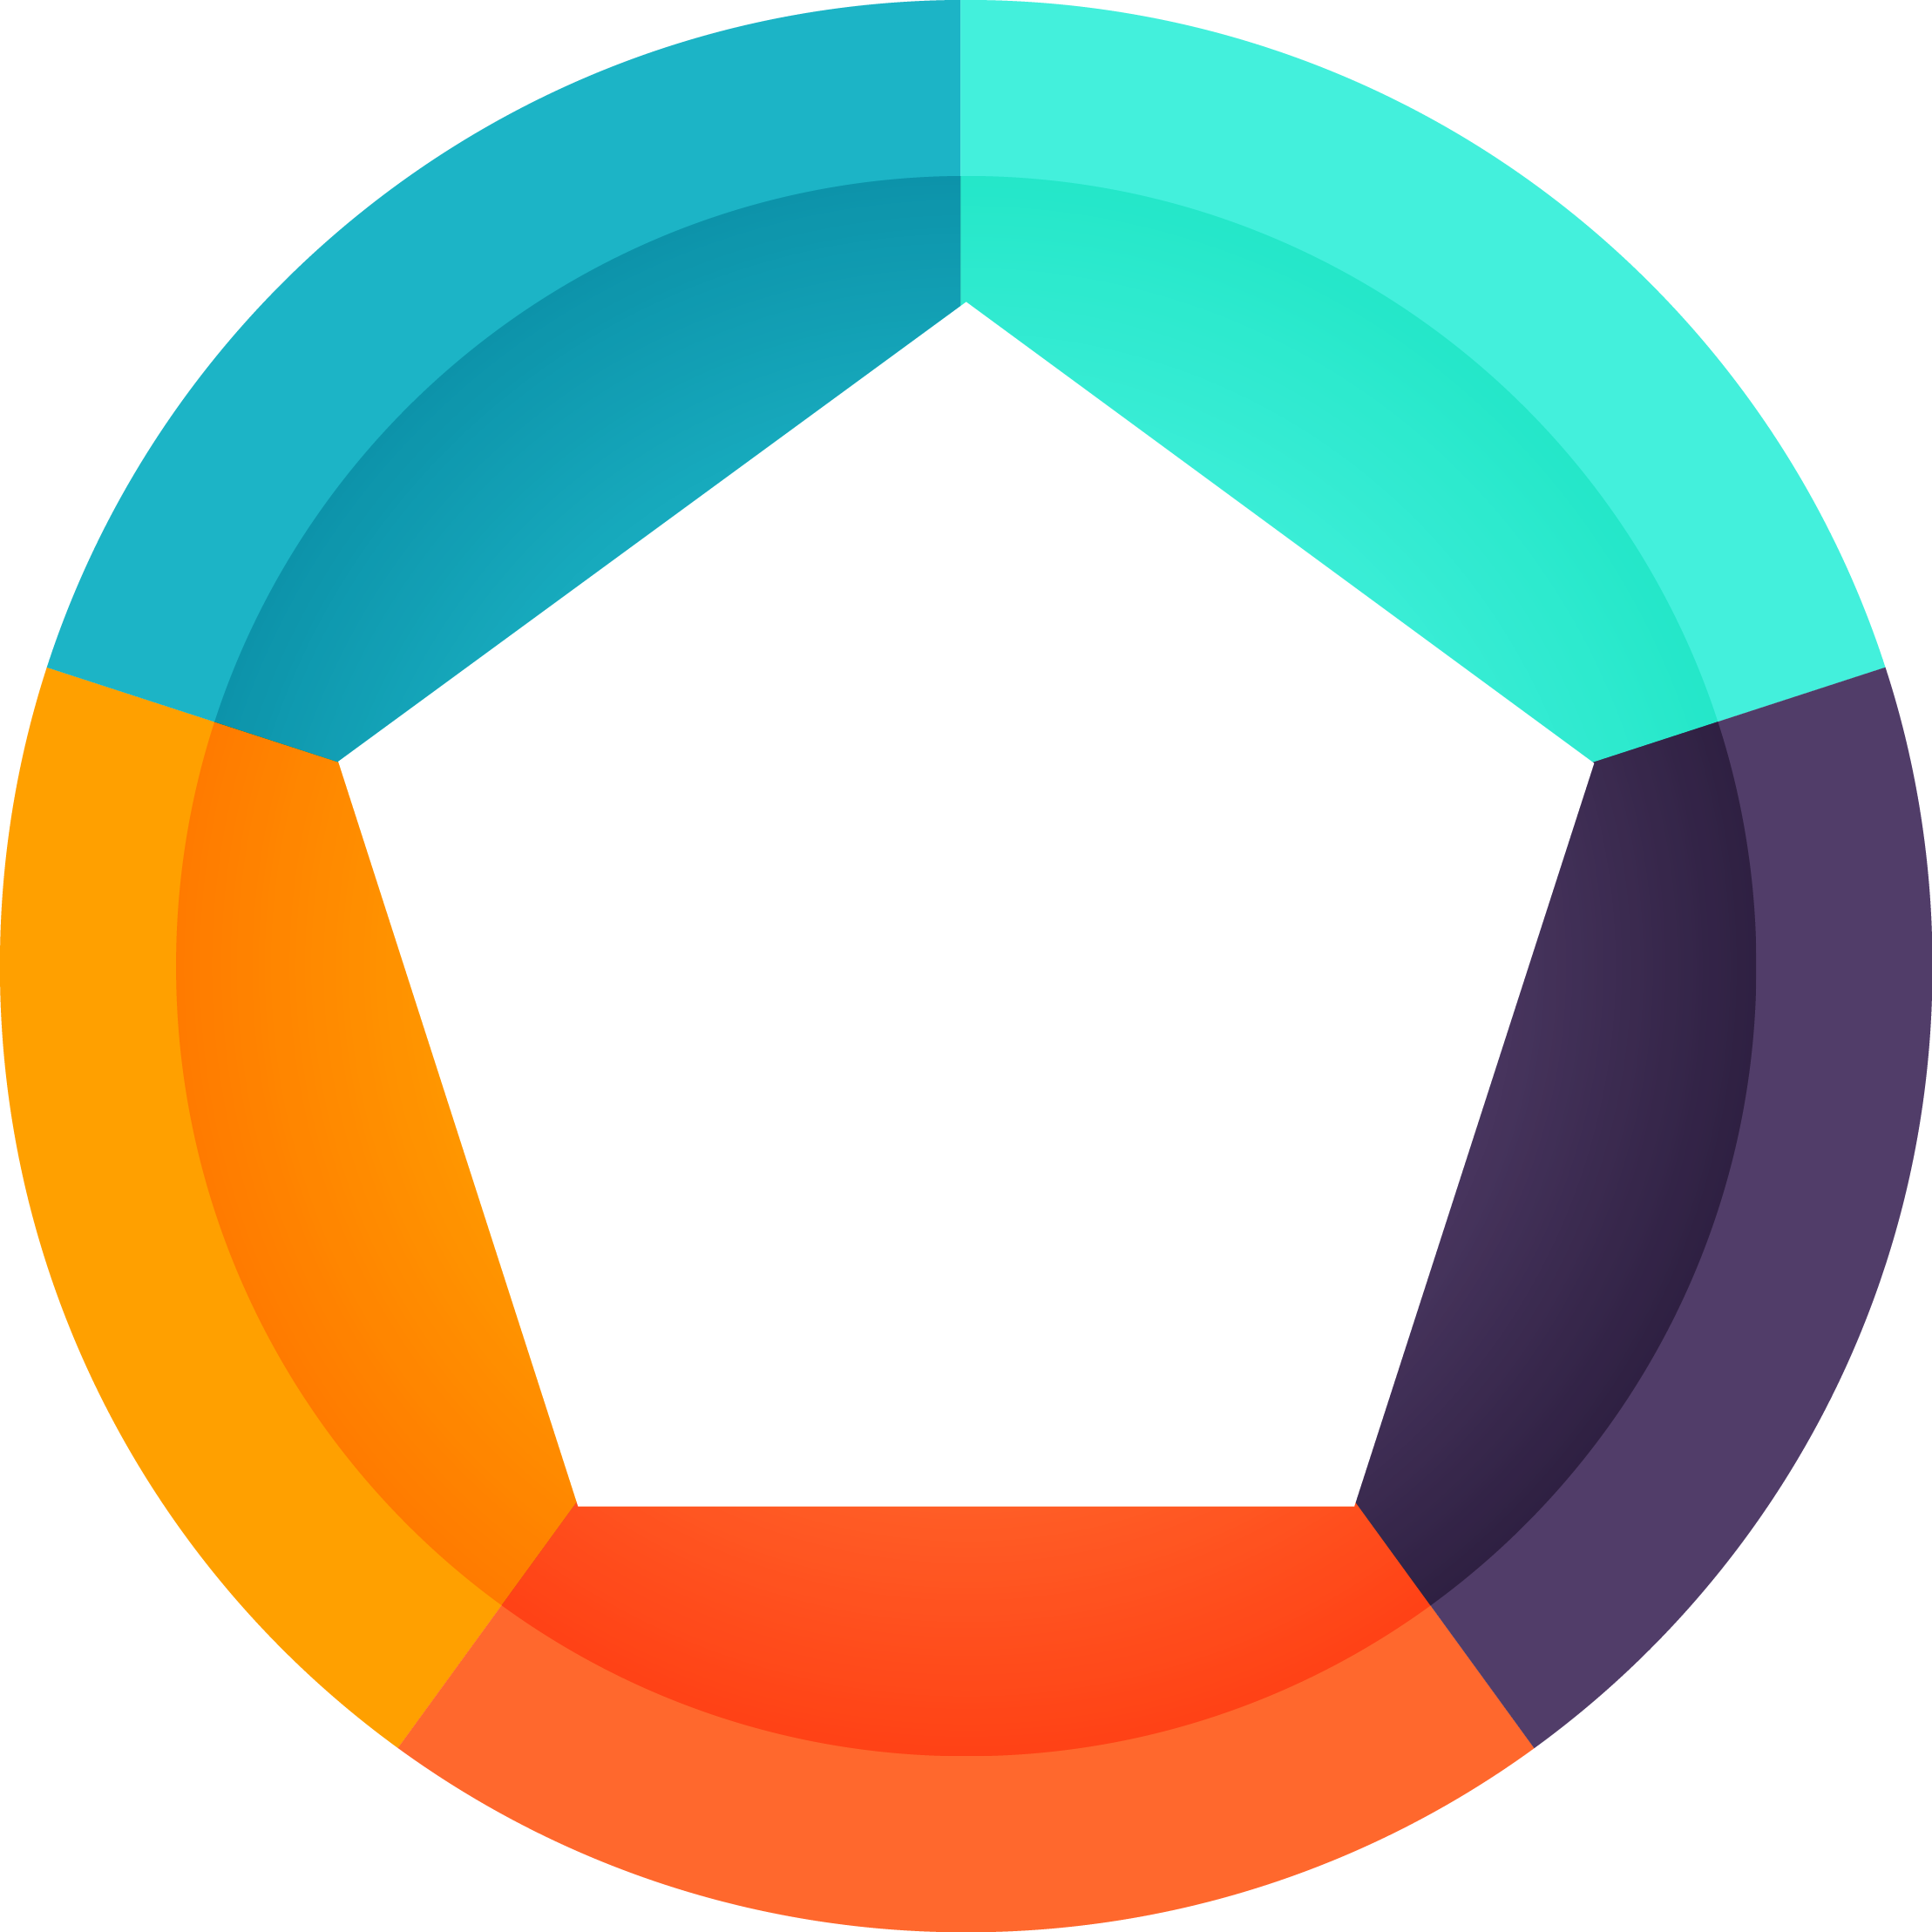 Circle logo. Круглые геометрические фигуры. Круглый логотип. Круг для логотипа. Фигуры для логотипа.